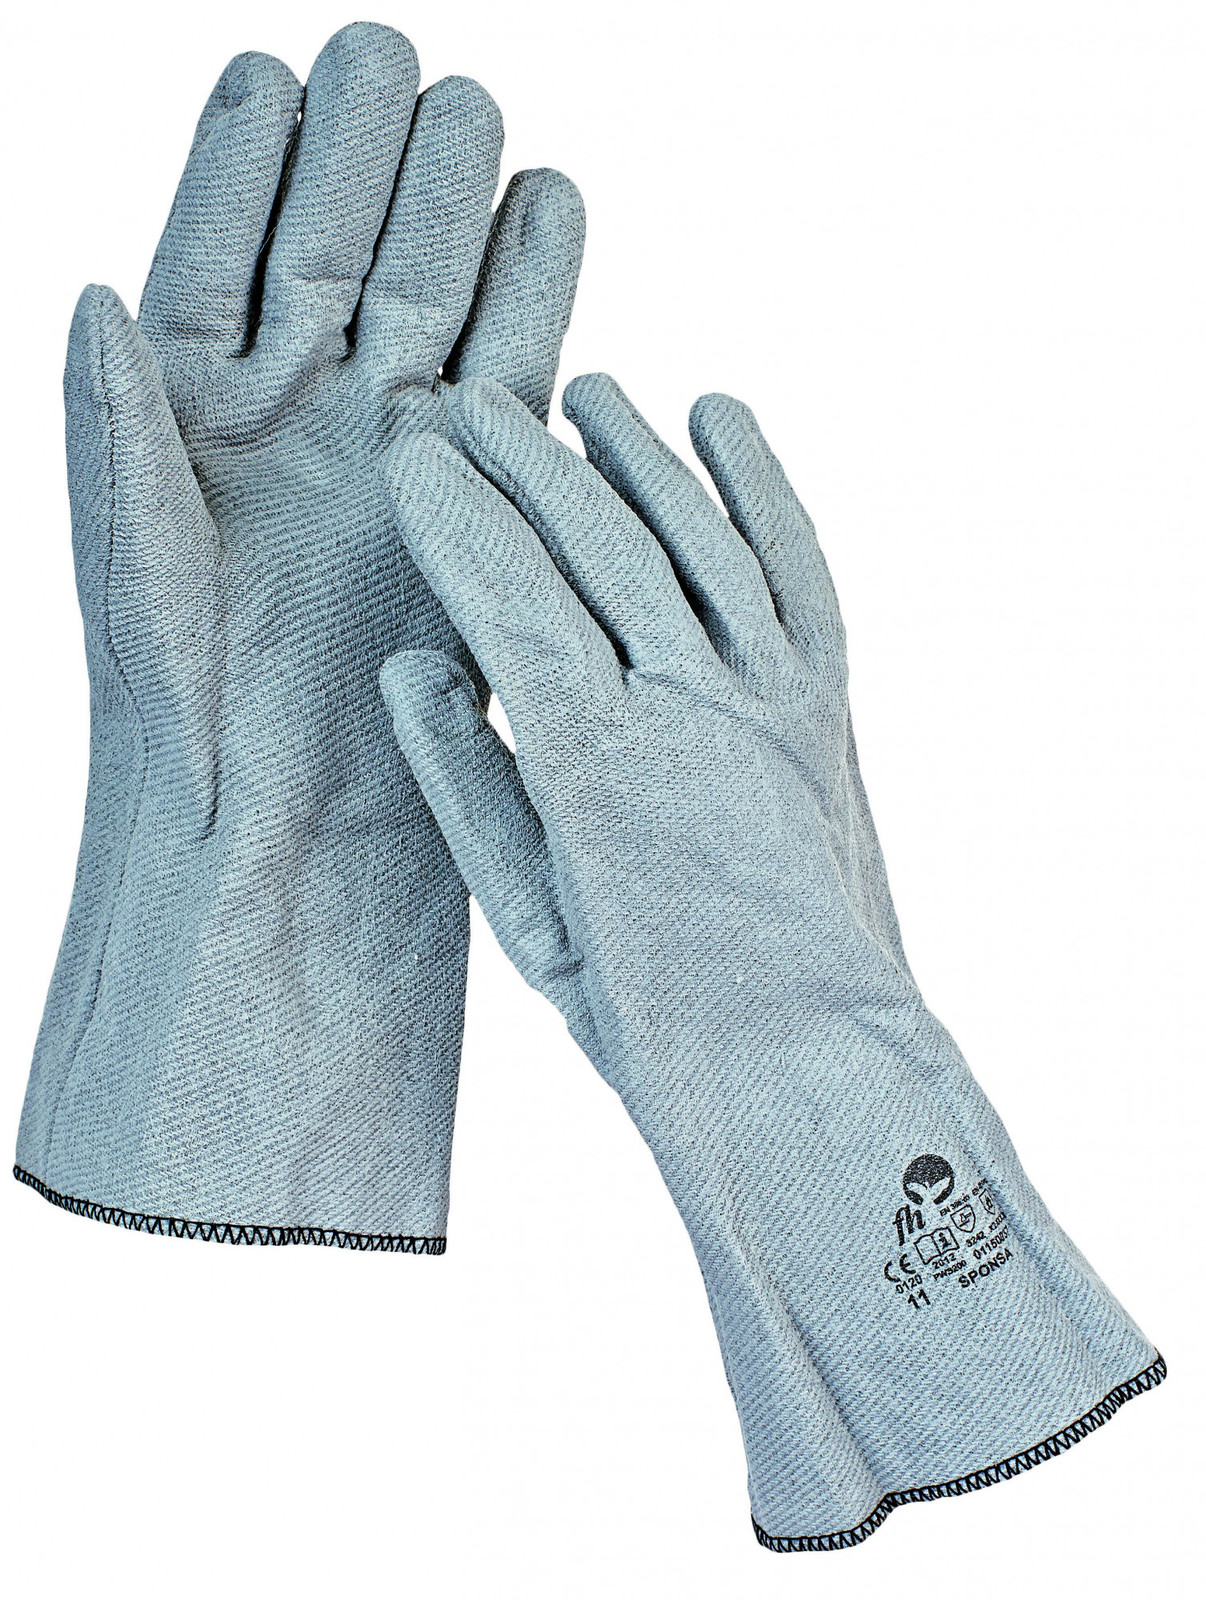 Teplovzdorné rukavice Sponsa do 250 °C - veľkosť: 9/L